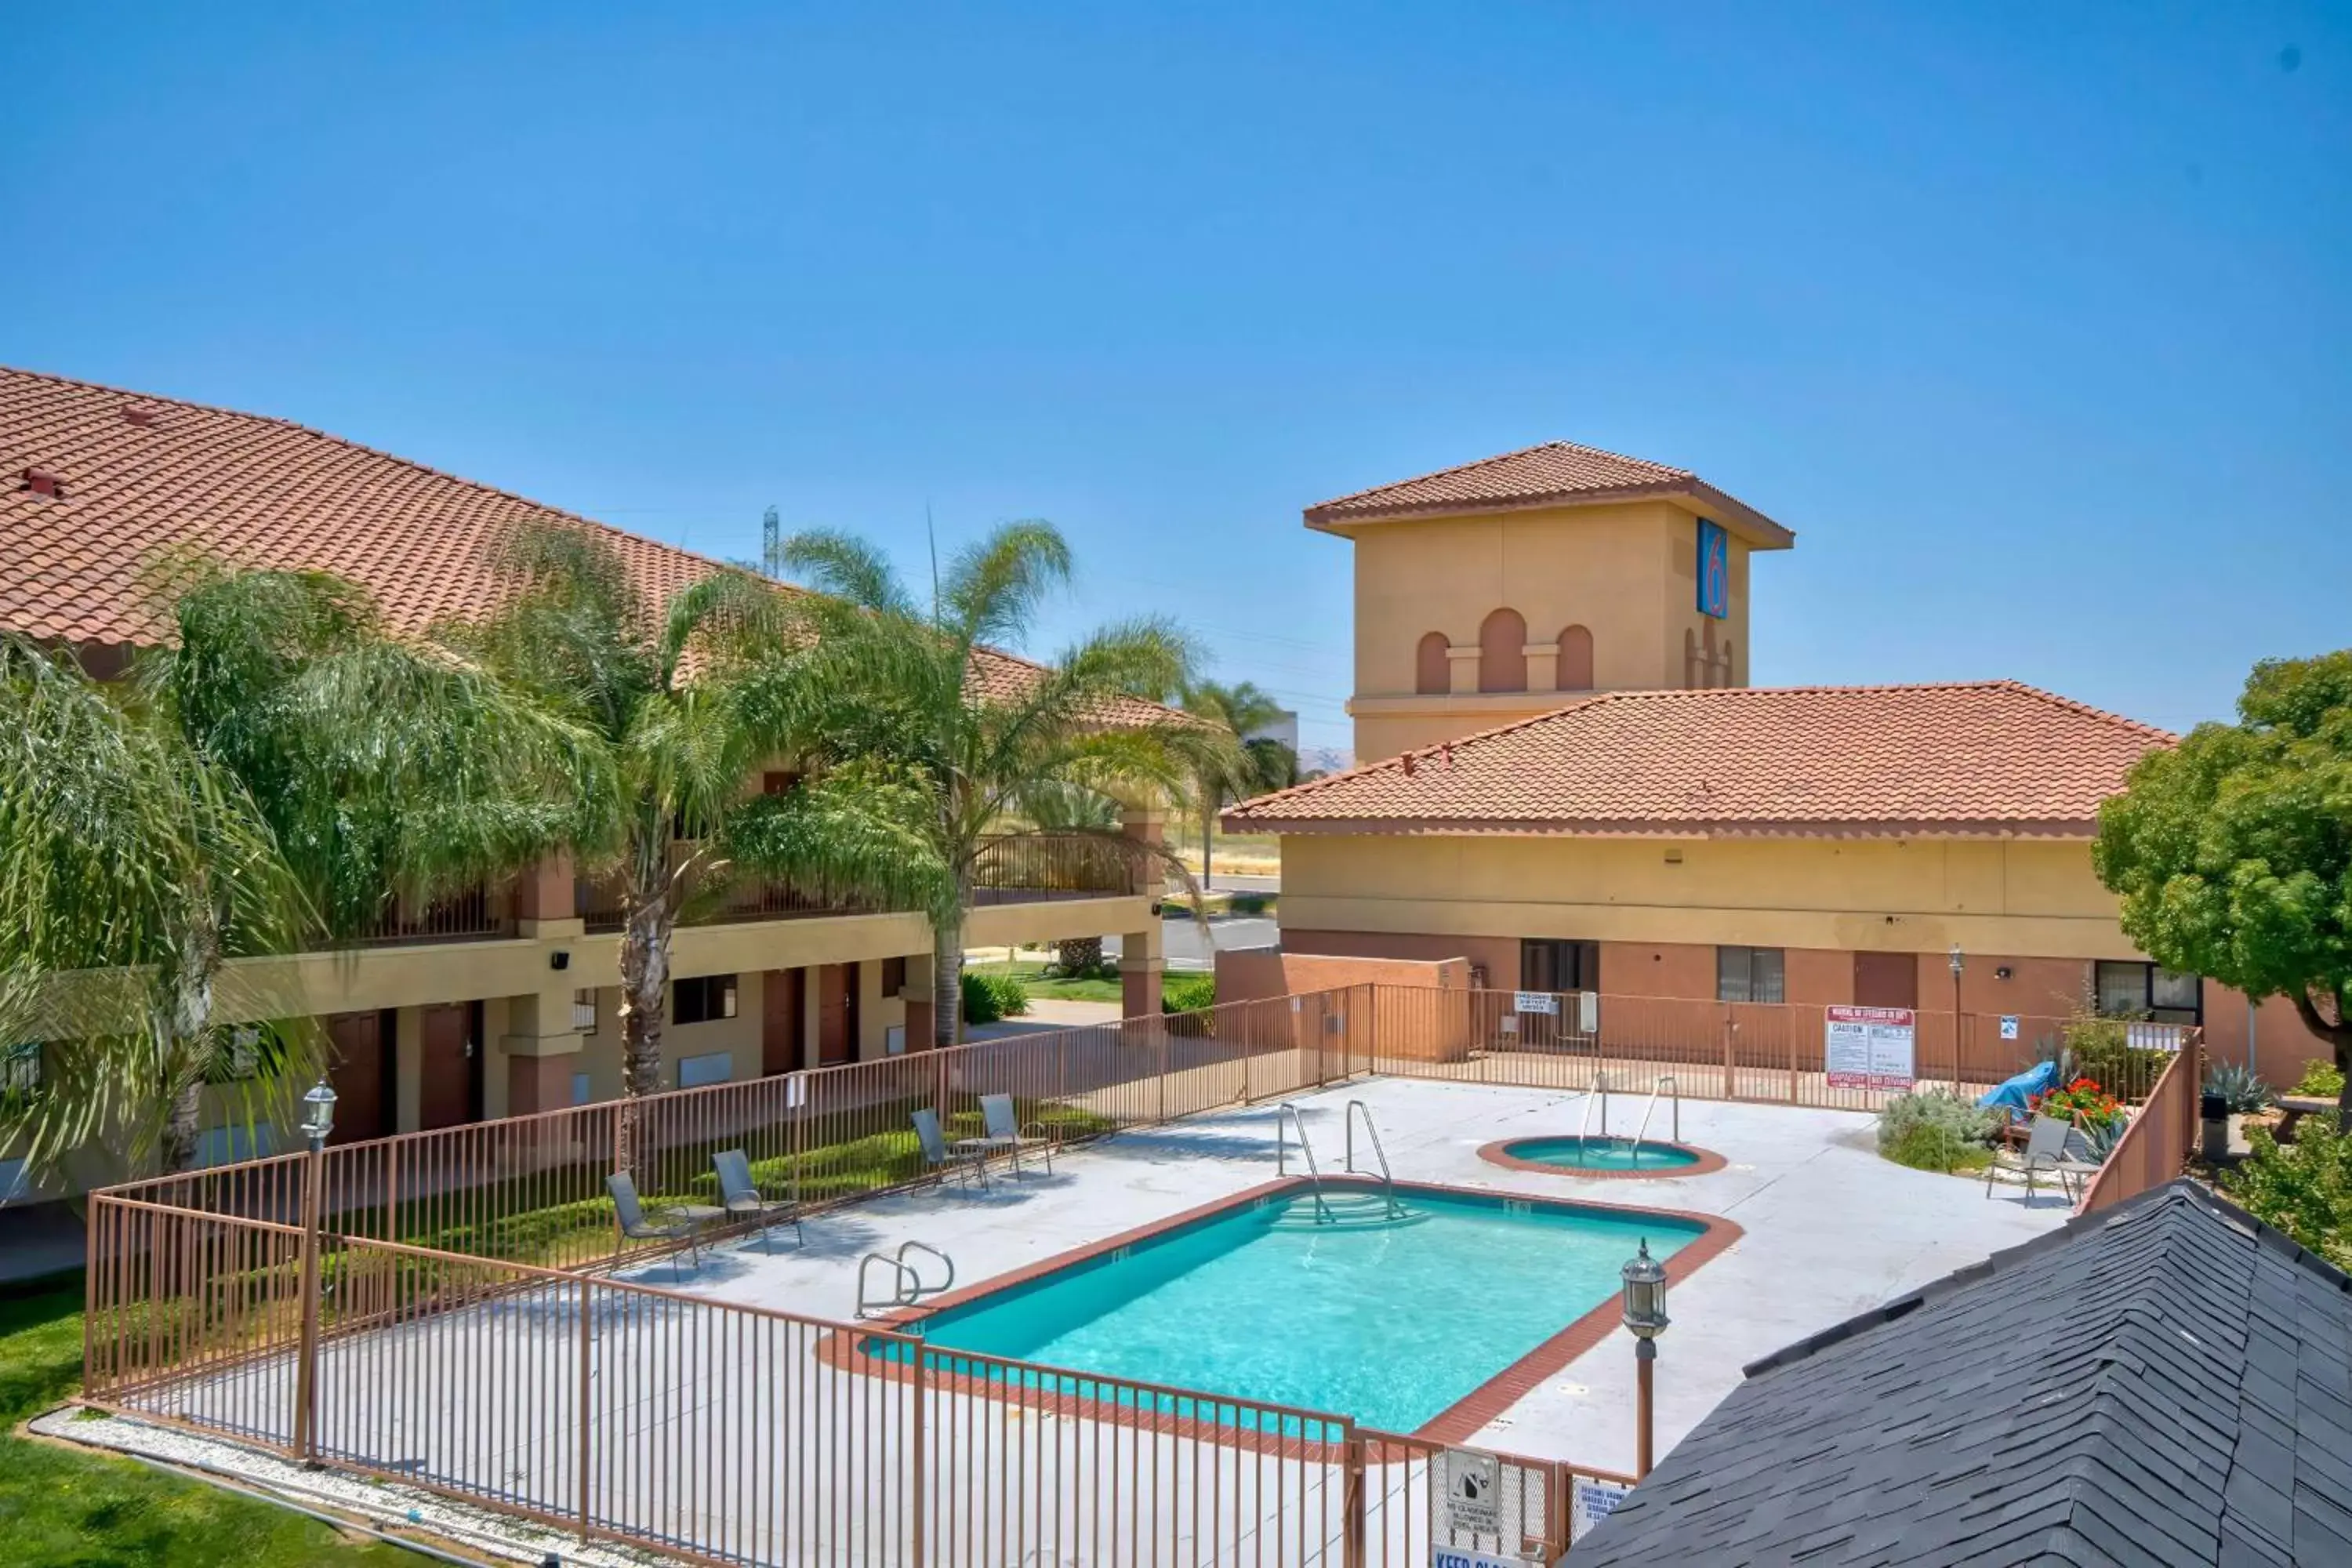 Pool View in Motel 6-Santa Nella, CA - Los Banos